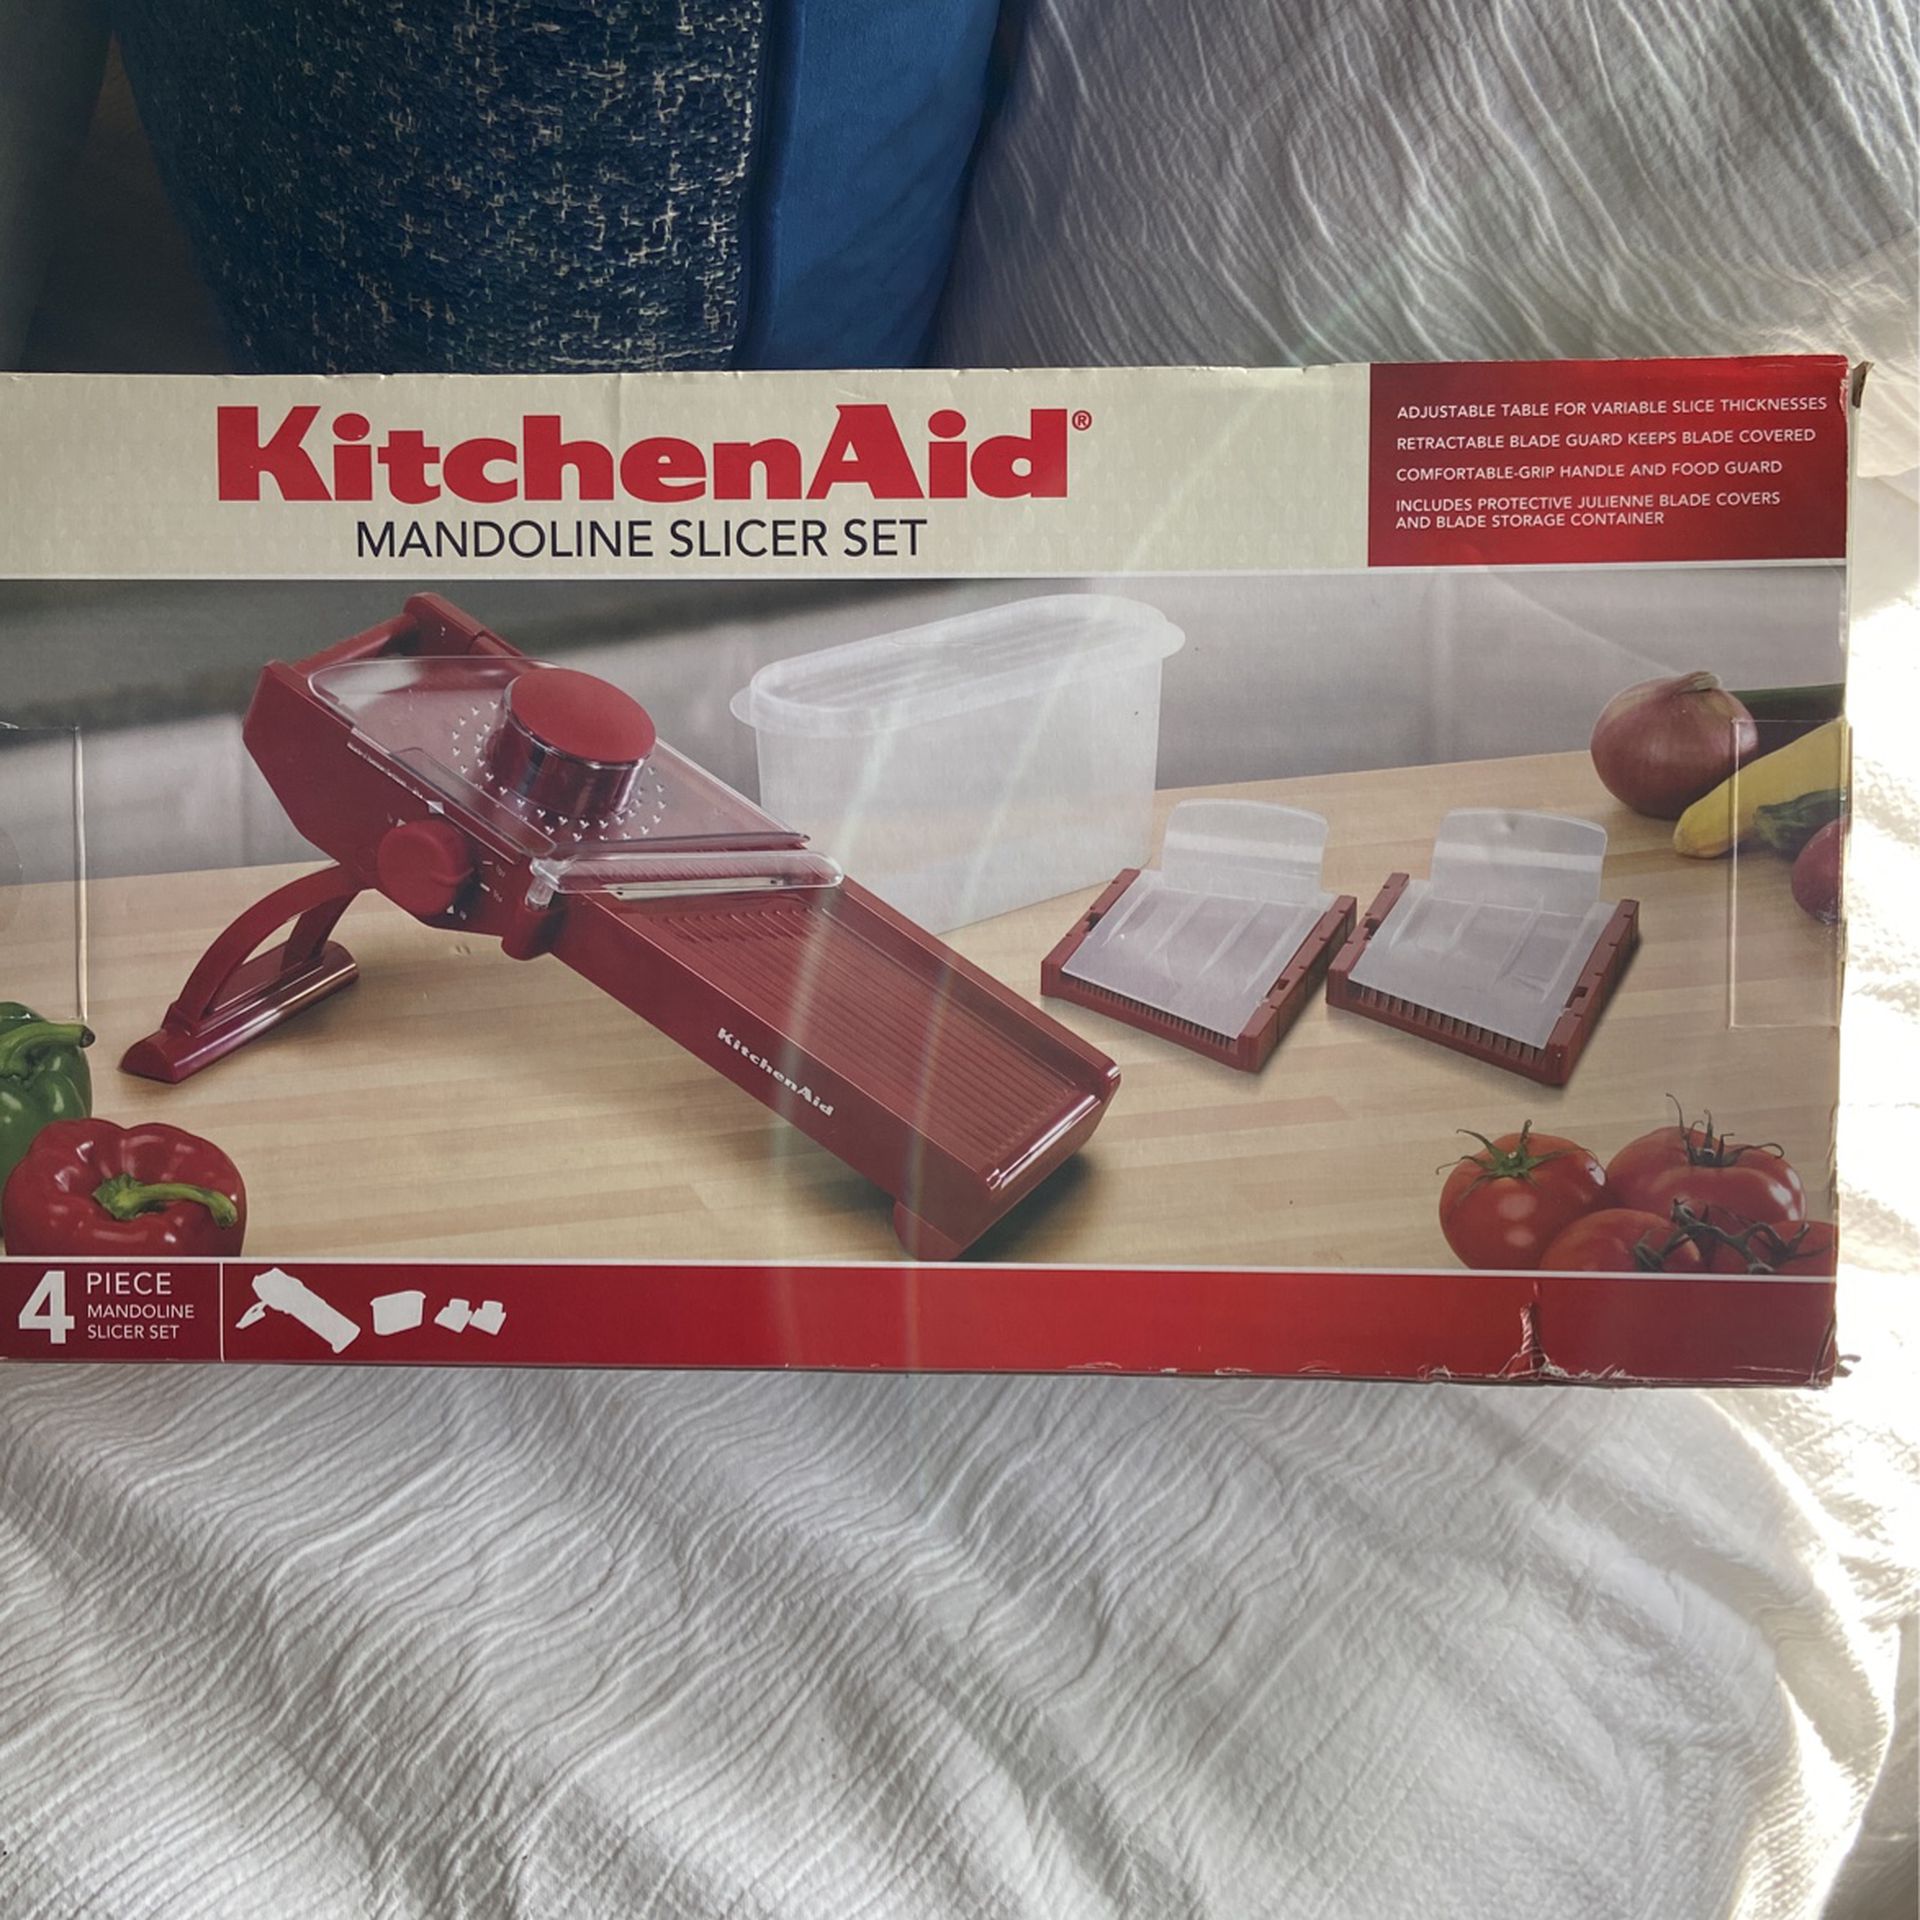 KitchenAid Mandoline Slicert, KitchenAid